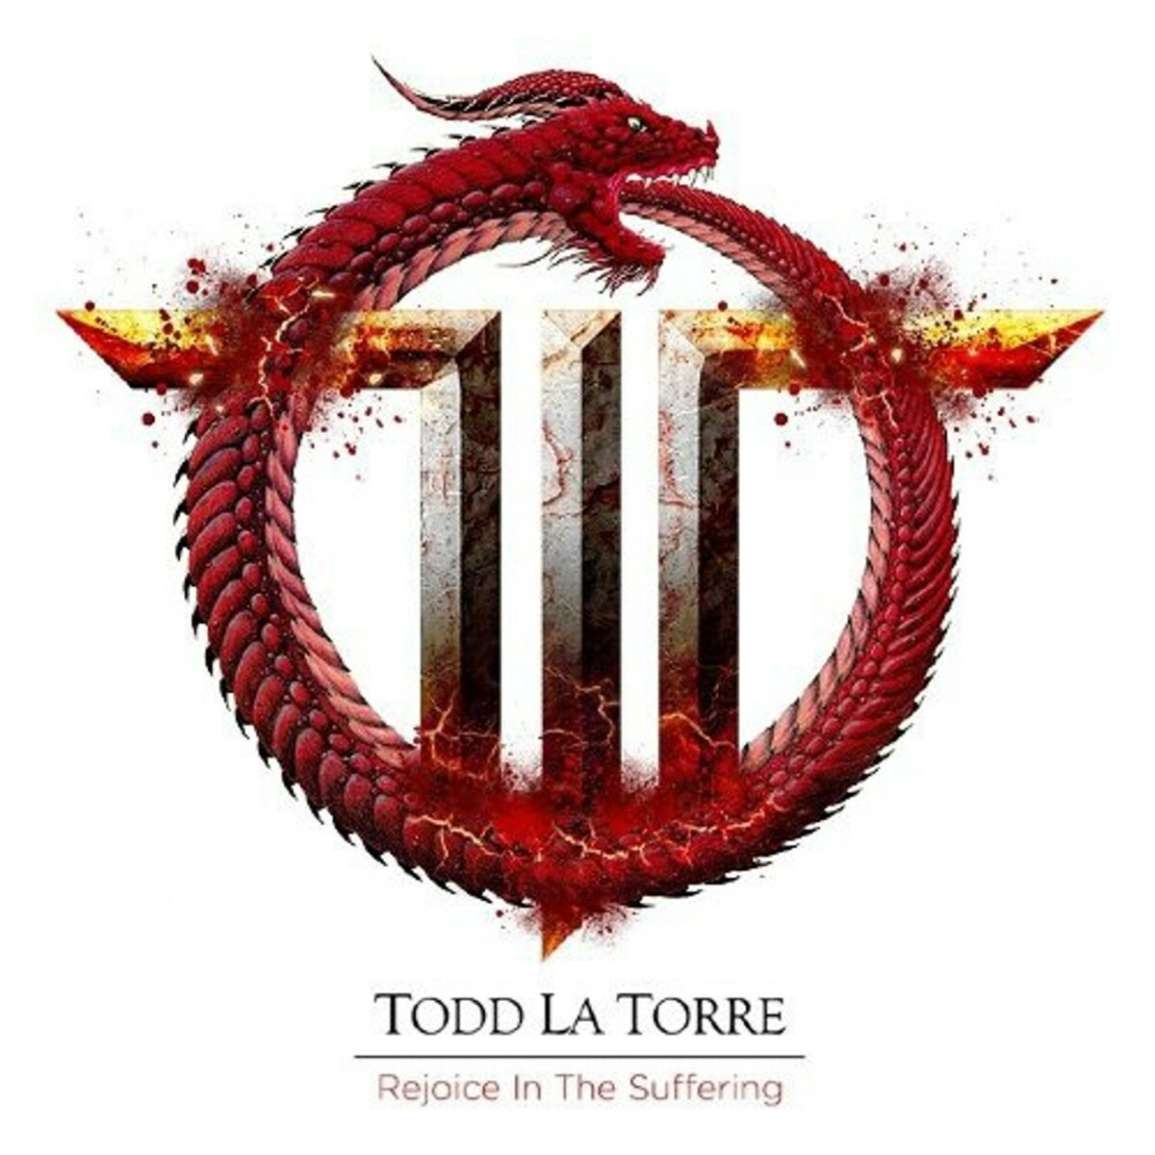 TODD LA TORRE - Rejoice The Suffering